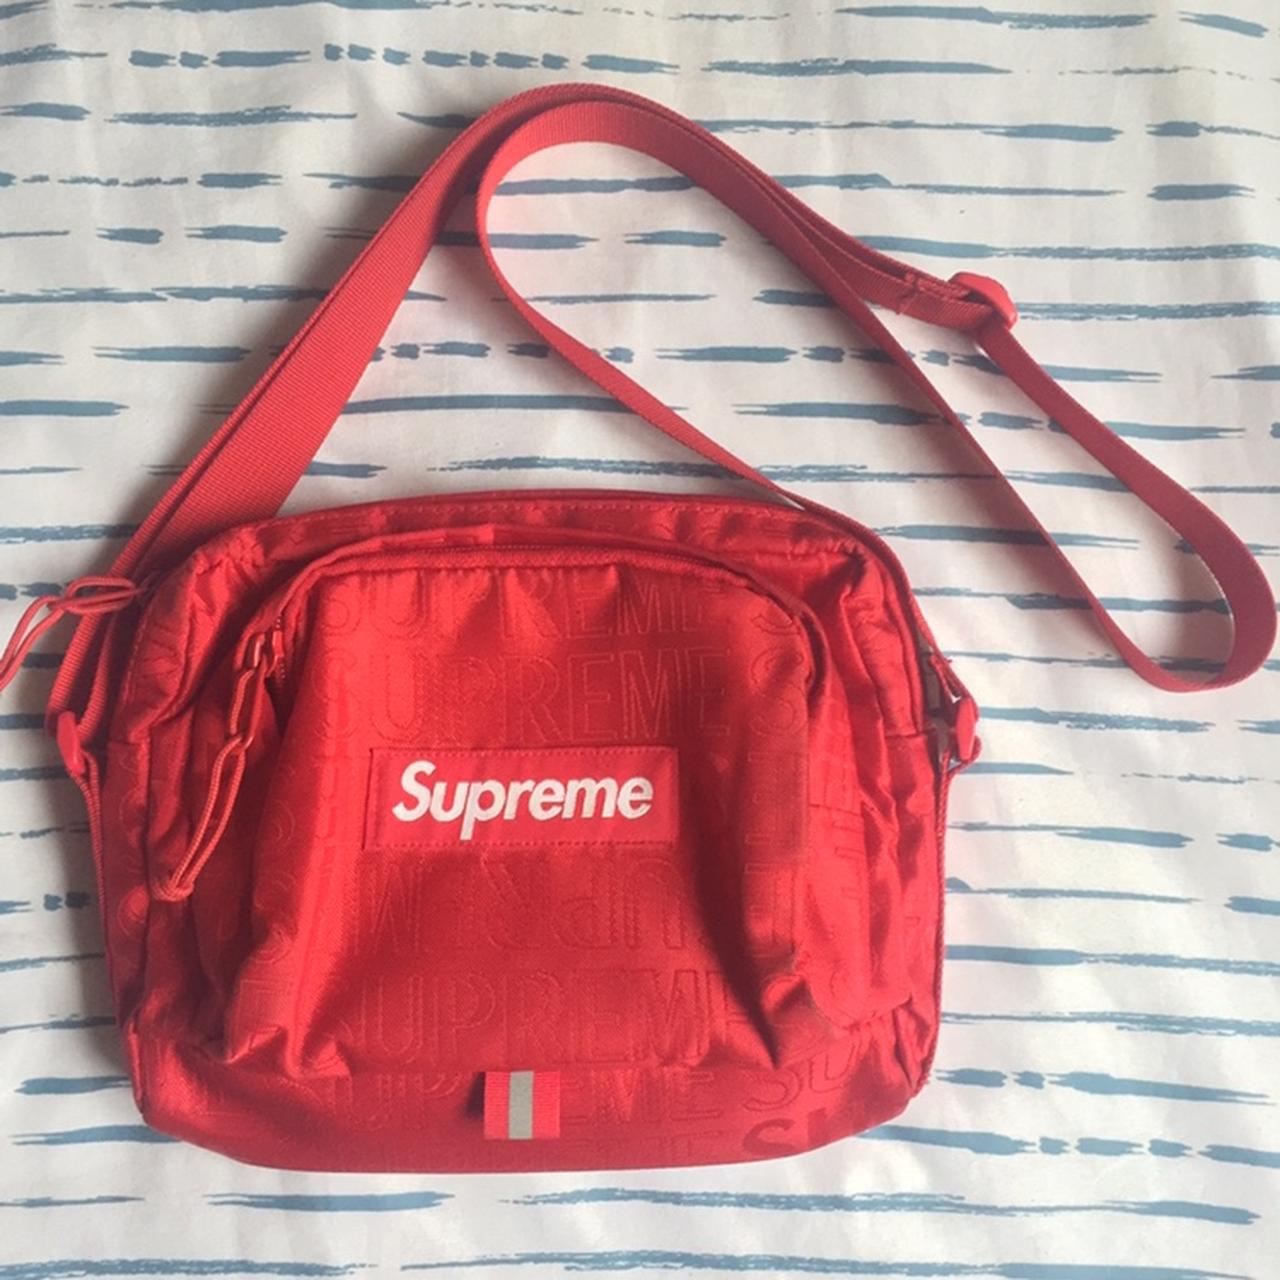 Product Image 1 - Supreme / Red / Bag